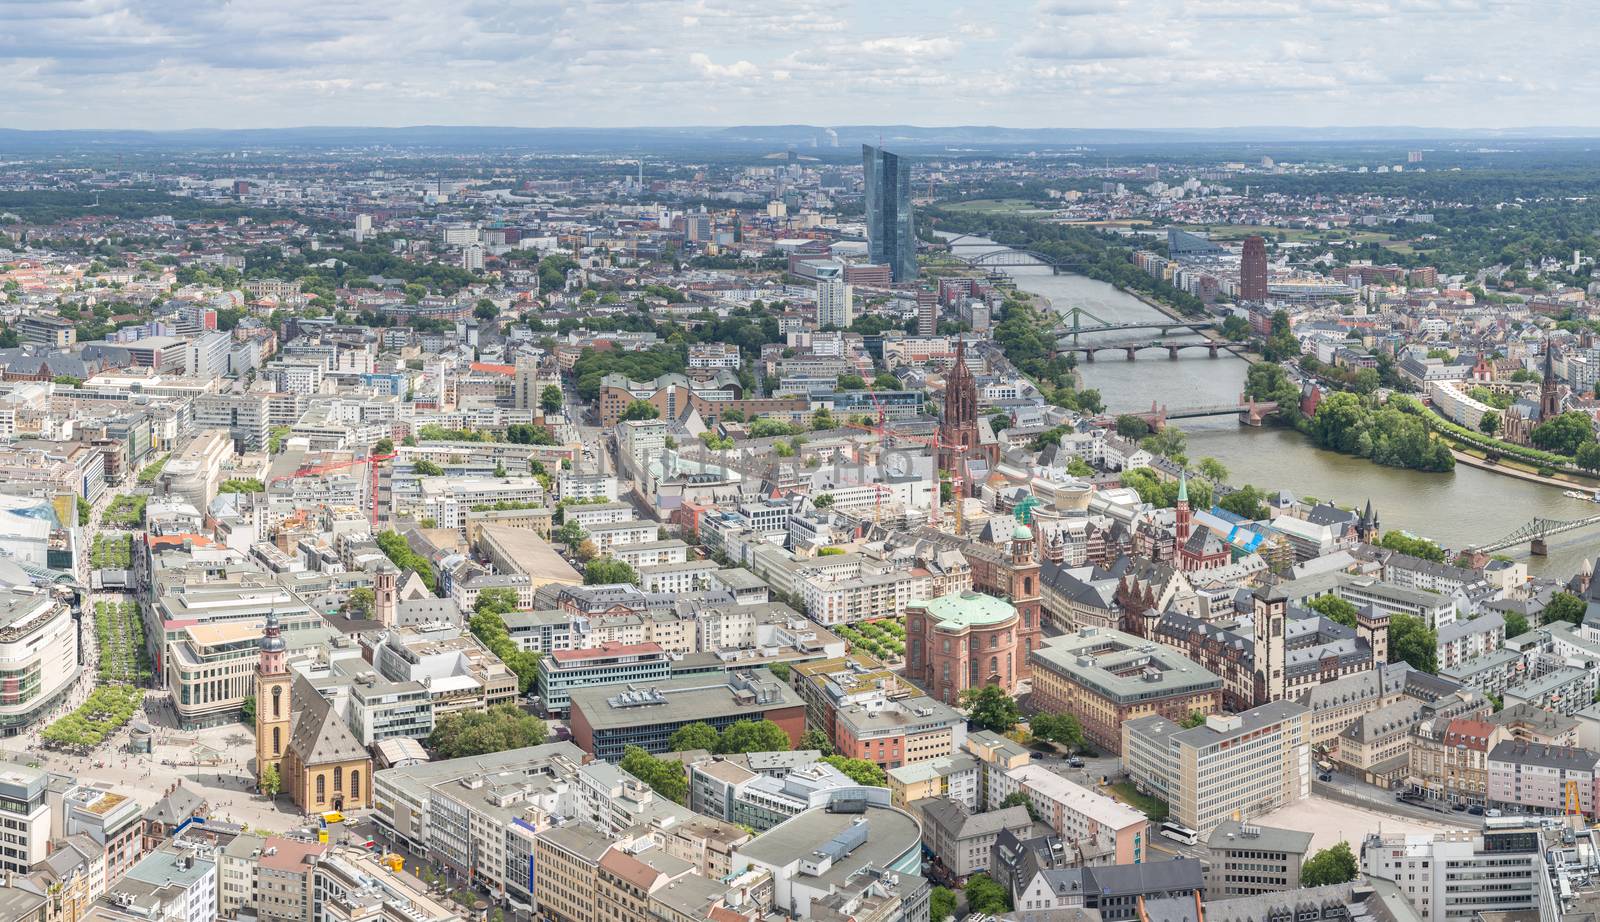 Frankfurt Germany aerial view by vichie81